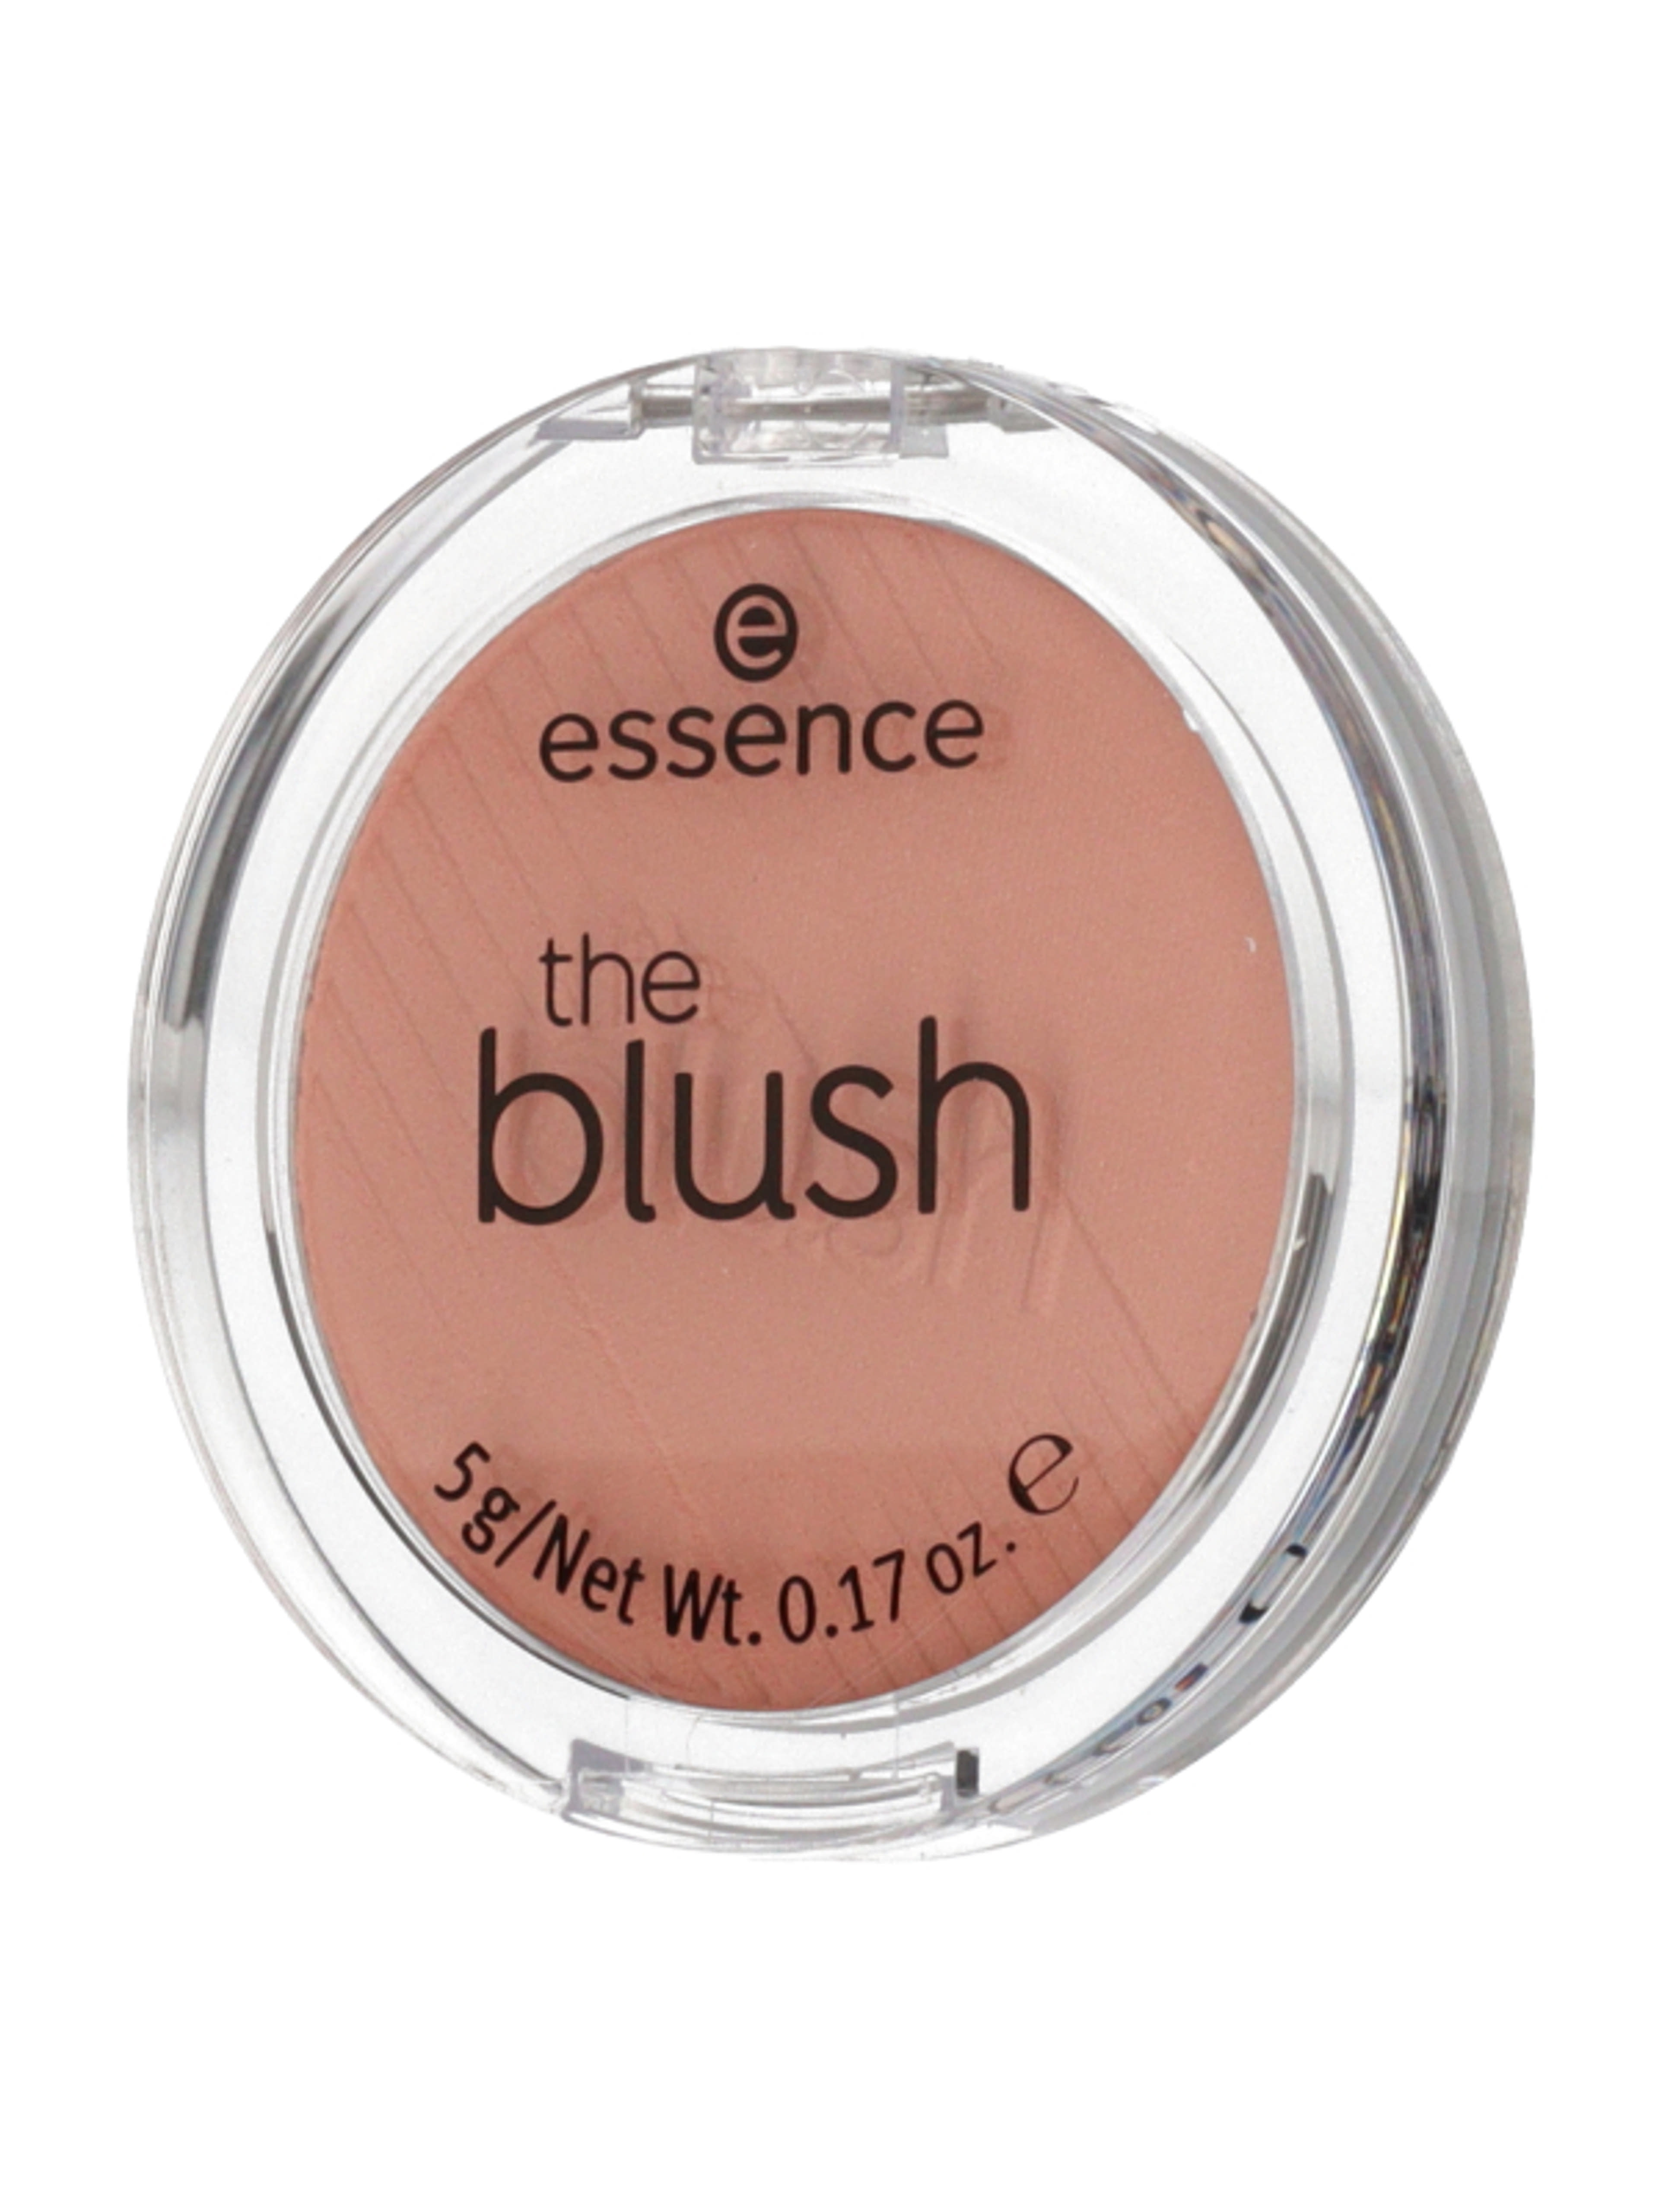 Essence Hello The Blush! pirosító /90 bedazzling - 1 db-4